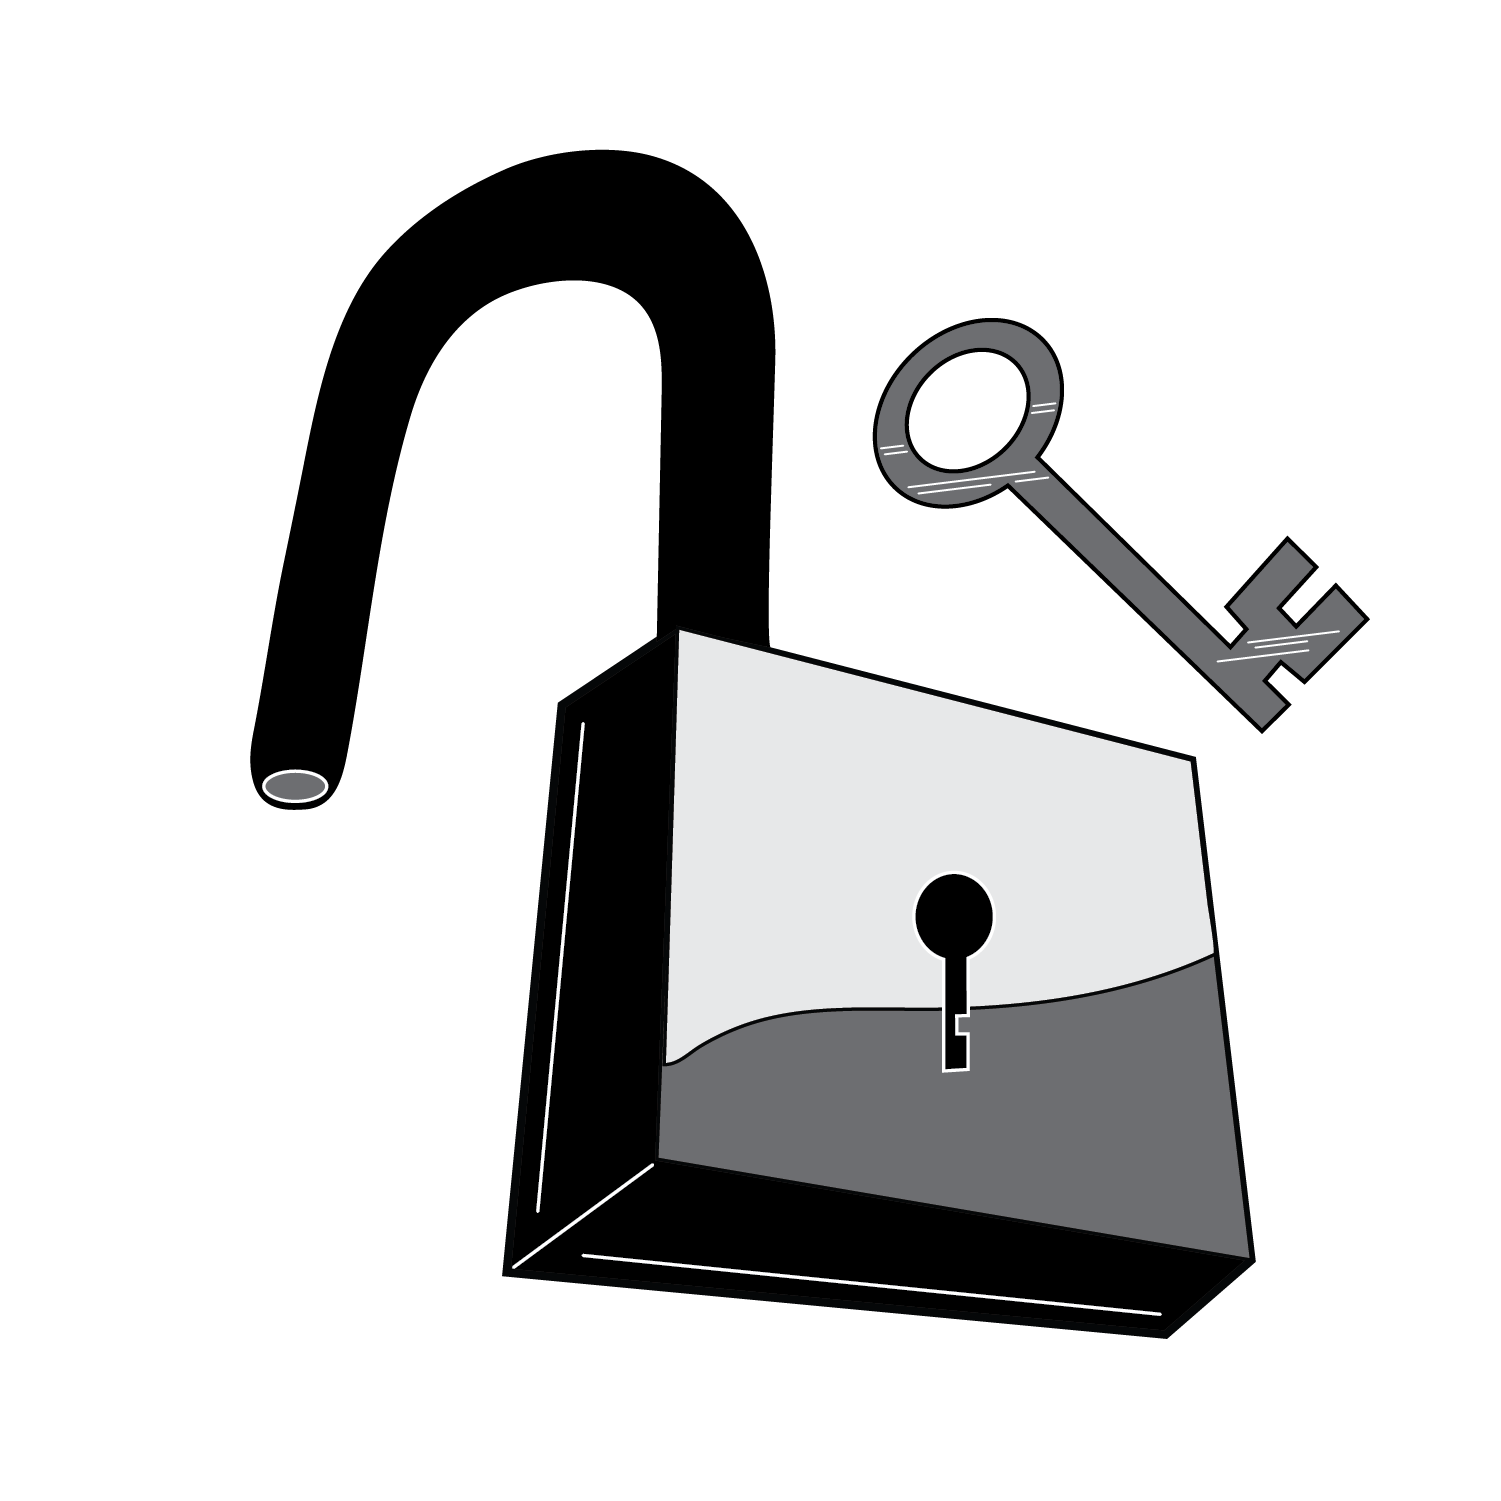 Unlocked padlock with a key